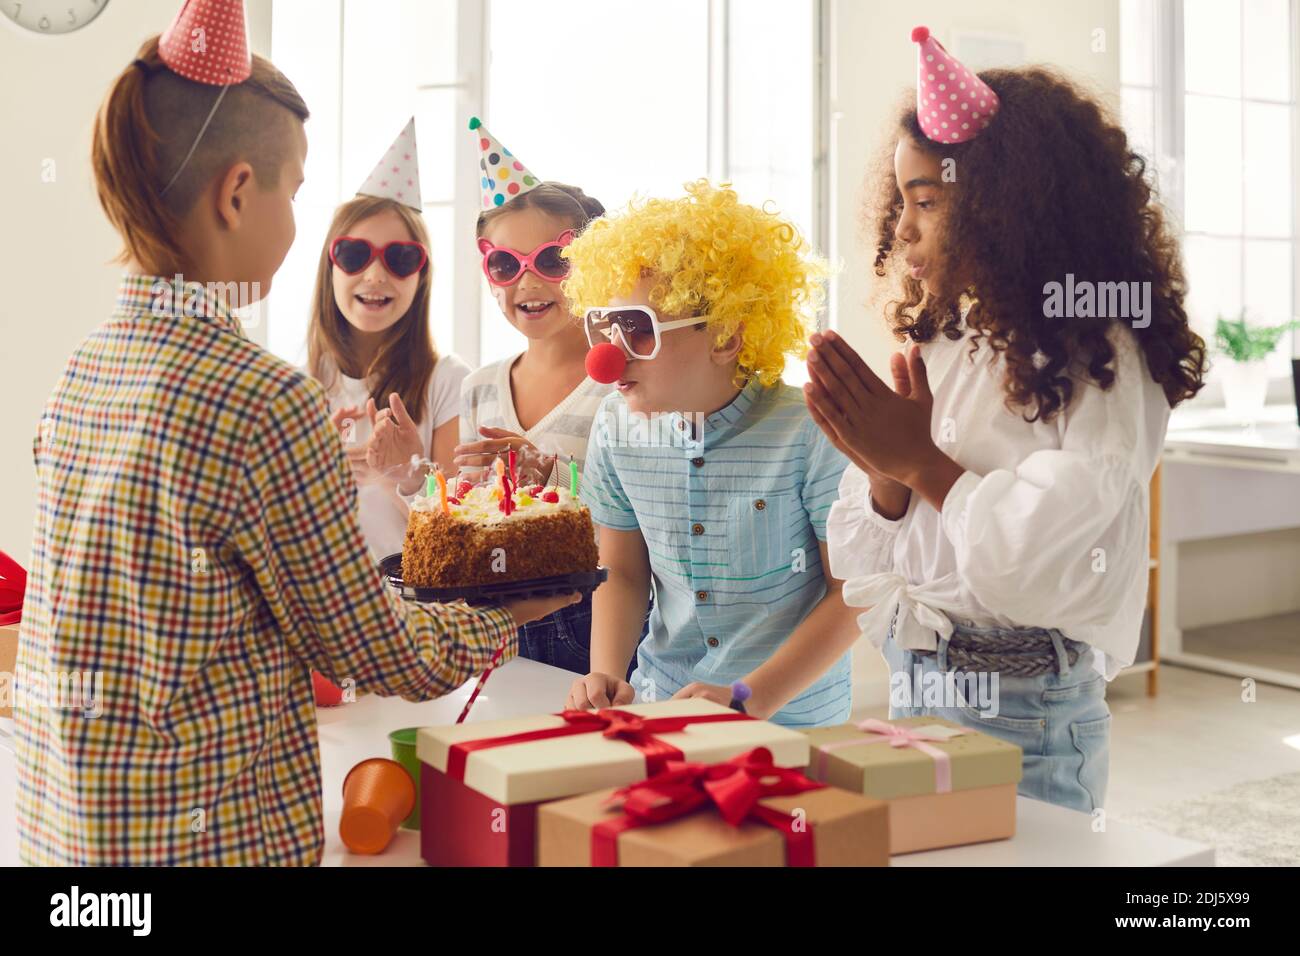 Gruppe von Kindern gratuliert ihrem Freund zu seinem Geburtstag und gibt ihm Geschenke und einen Kuchen. Stockfoto